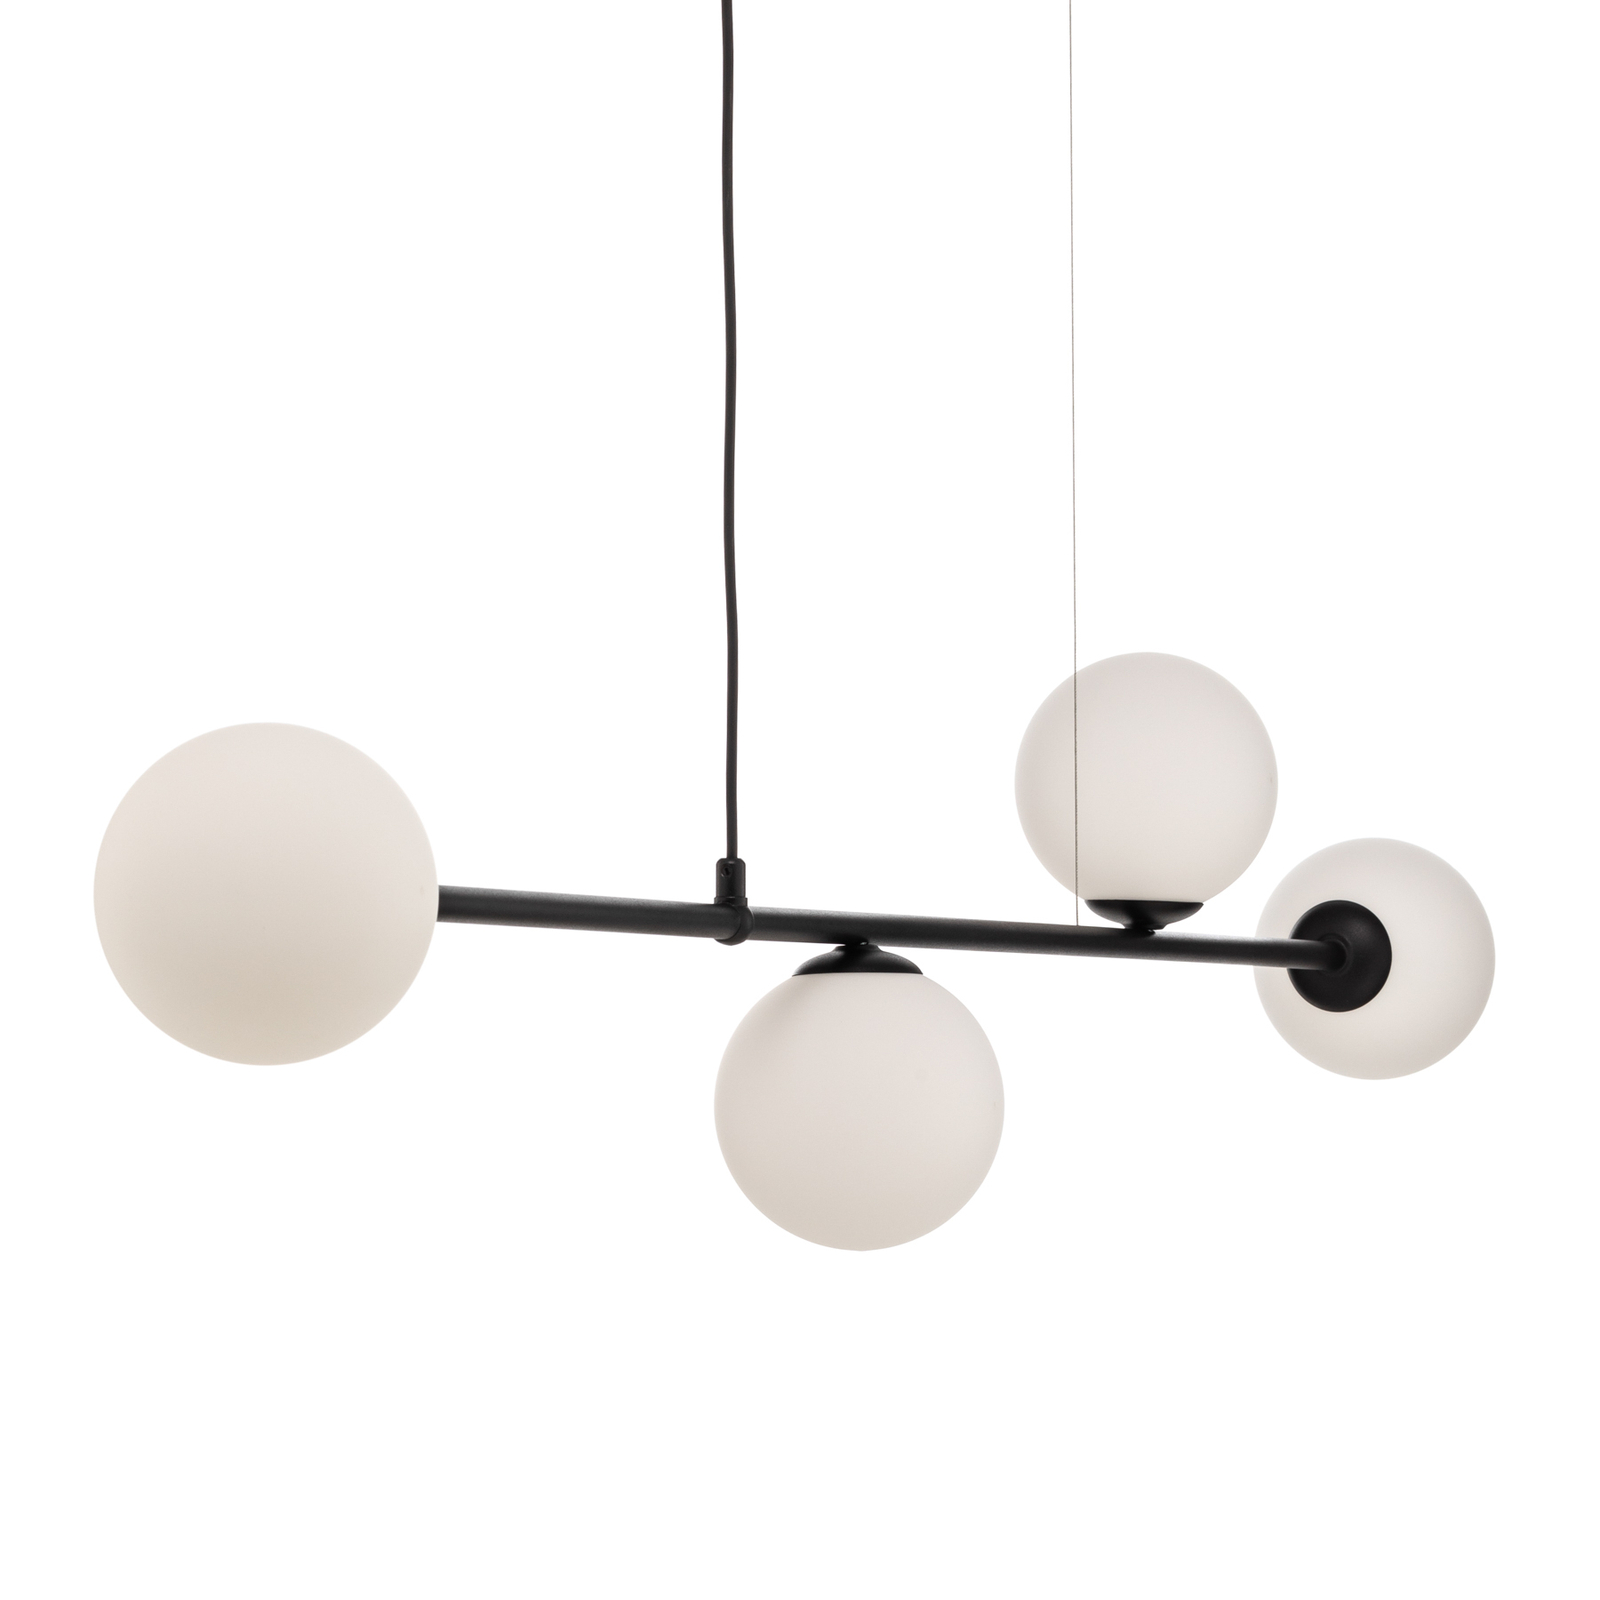 Viseća lampa Alison crno/bijela, 4 žarulje, greda, 154 cm